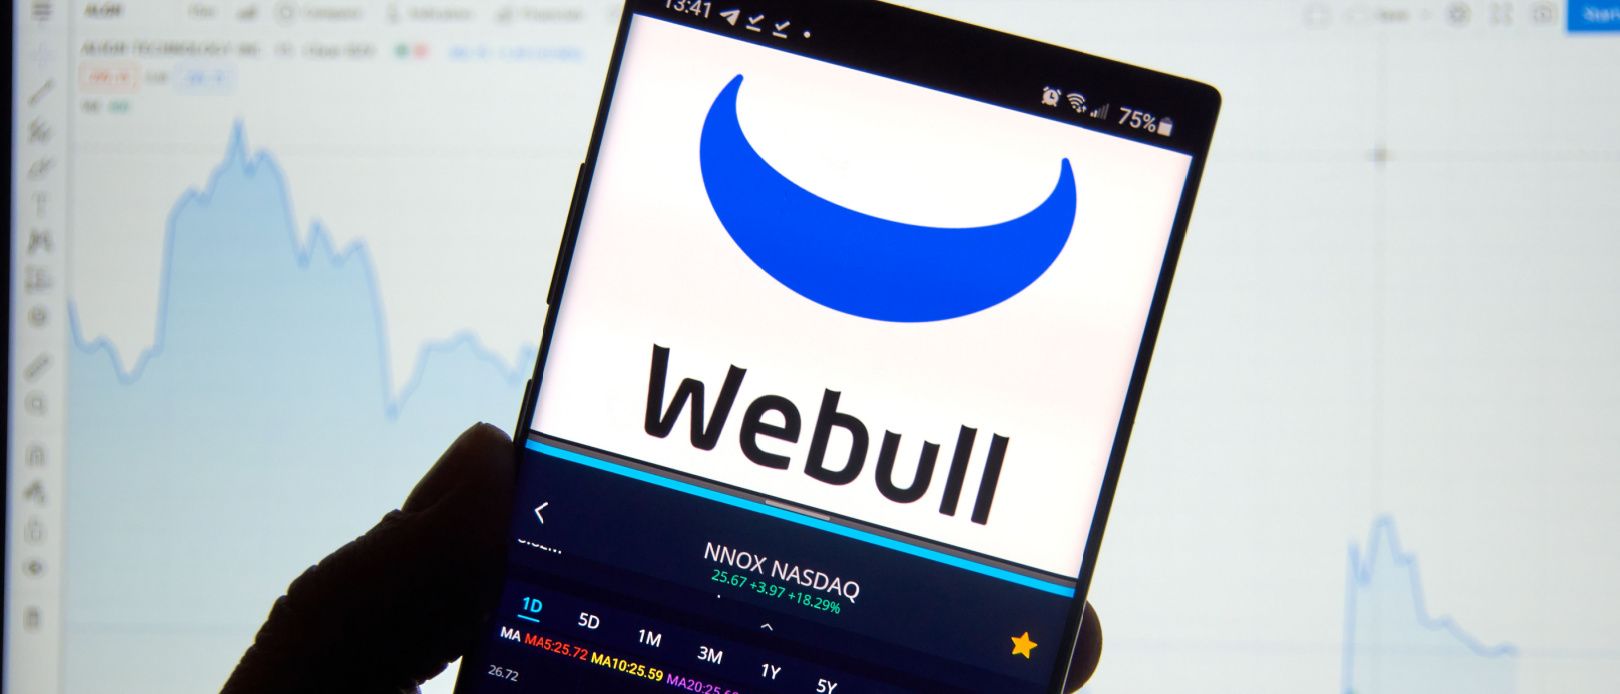 Webull review: